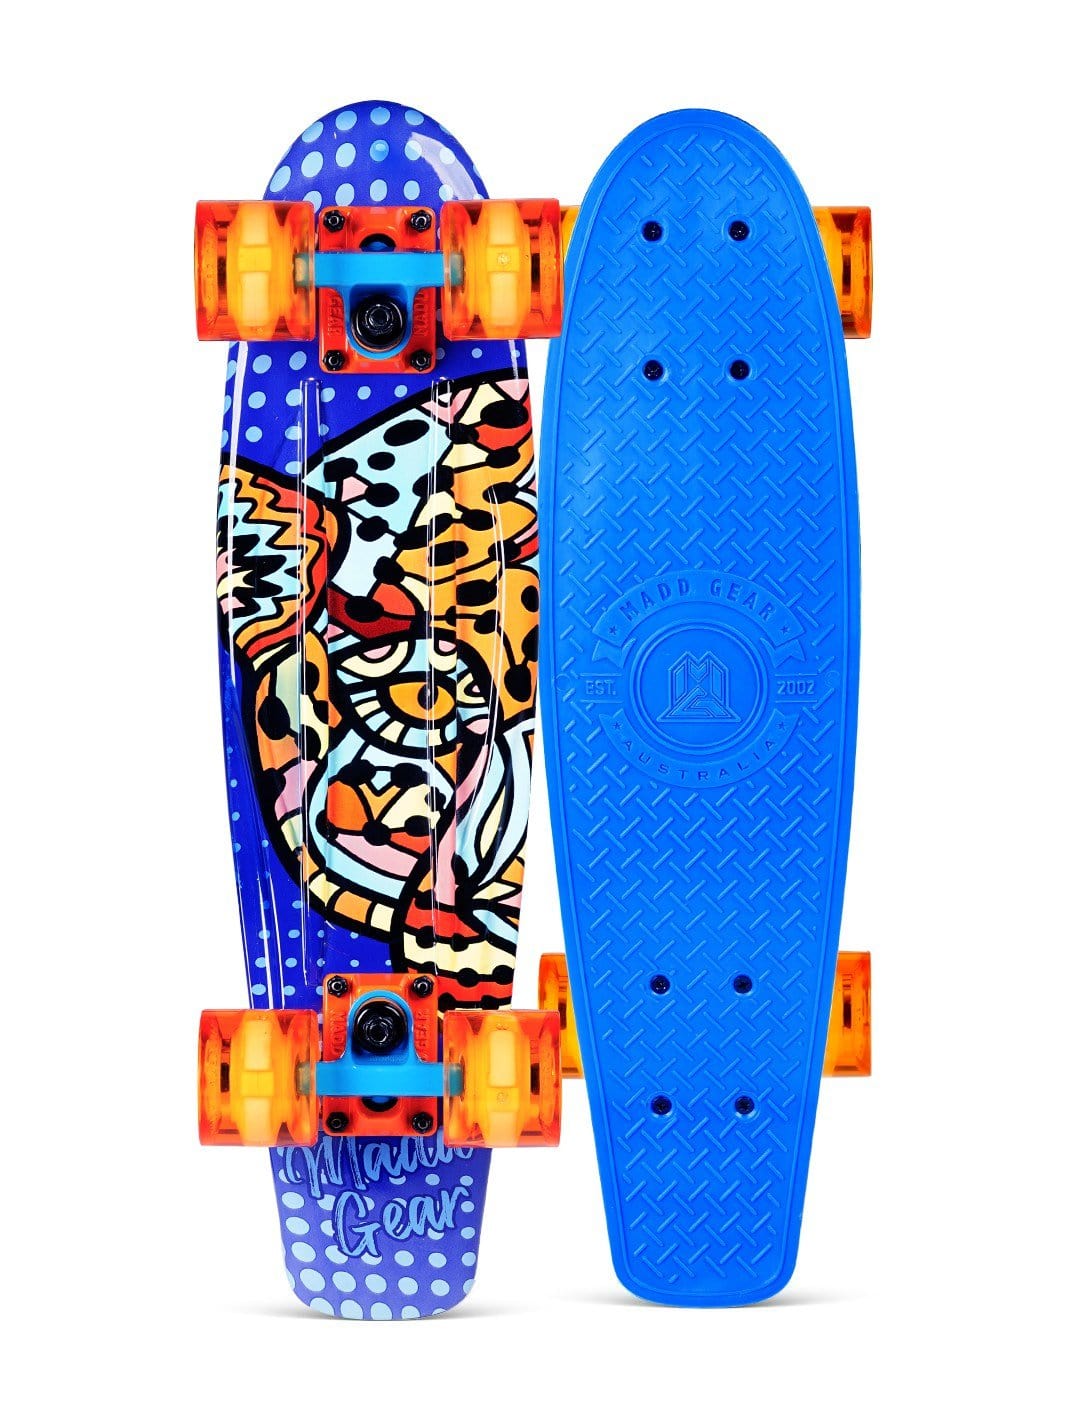 Madd Gear Penny Skateboard Retro Board Lion Blue Boys Girls Orange Plastic 22 Inch 22"